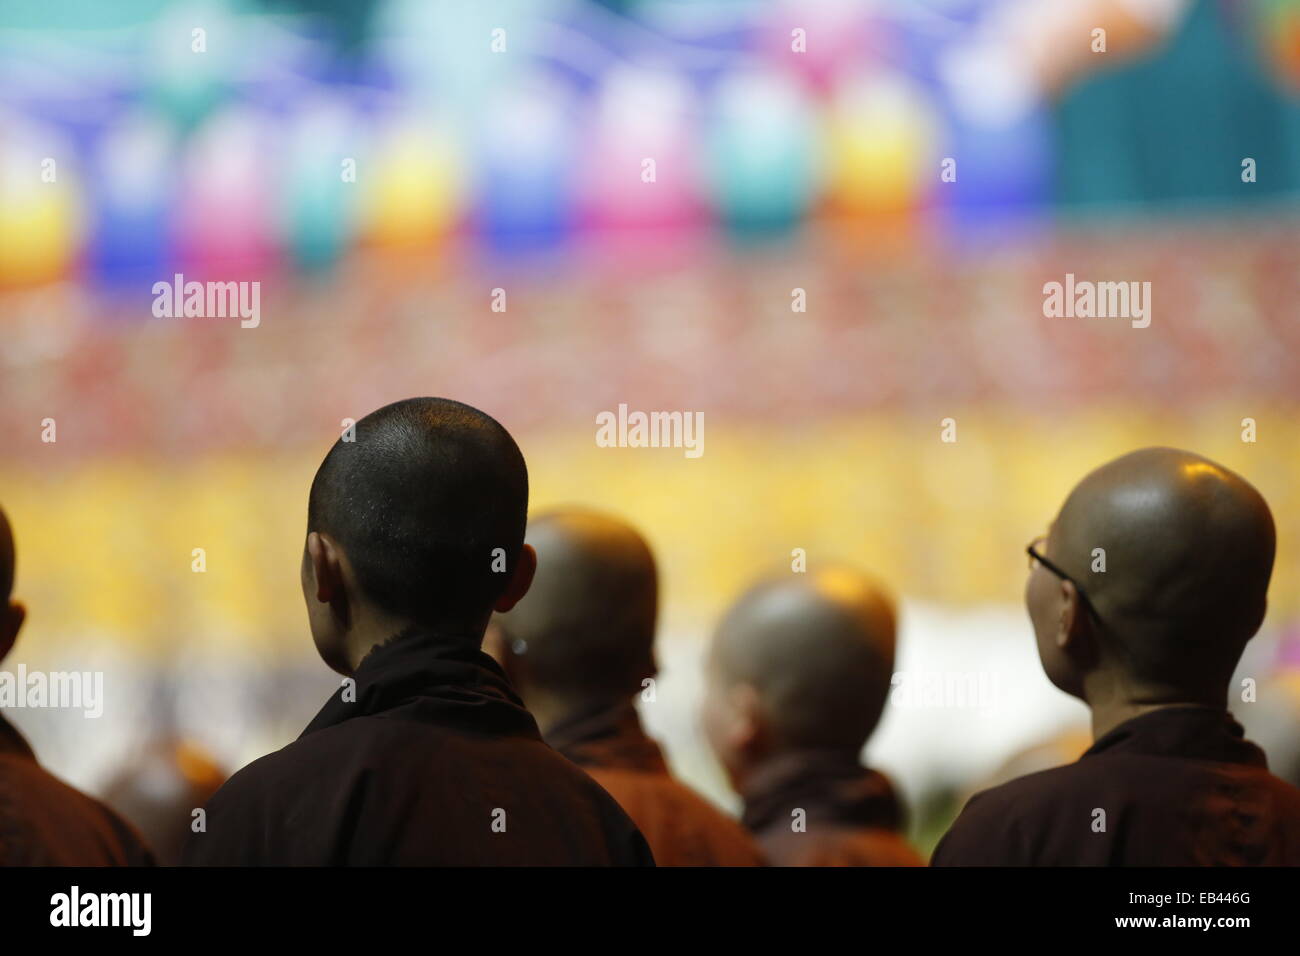 Mönche besuchen Lehre vom Dalai Lama in Louisville Kentucky.   Louisville der tibetischen buddhistischen Zentrum, das Drepung zusammenziehen-Institut und die Stadt Louisville host seine Heiligkeit der Dalai Lama vom 19.-21. Mai 2013.  Die zweitägige Veranstaltung, genannt "Fesselnde Mitgefühl", begann am Sonntag, den 19. Mai um die YUM! Mitte, wenn der Dalai Lama einen öffentlichen Vortrag zu einer erwarteten Publikum von 16.000 präsentieren wird. Stockfoto